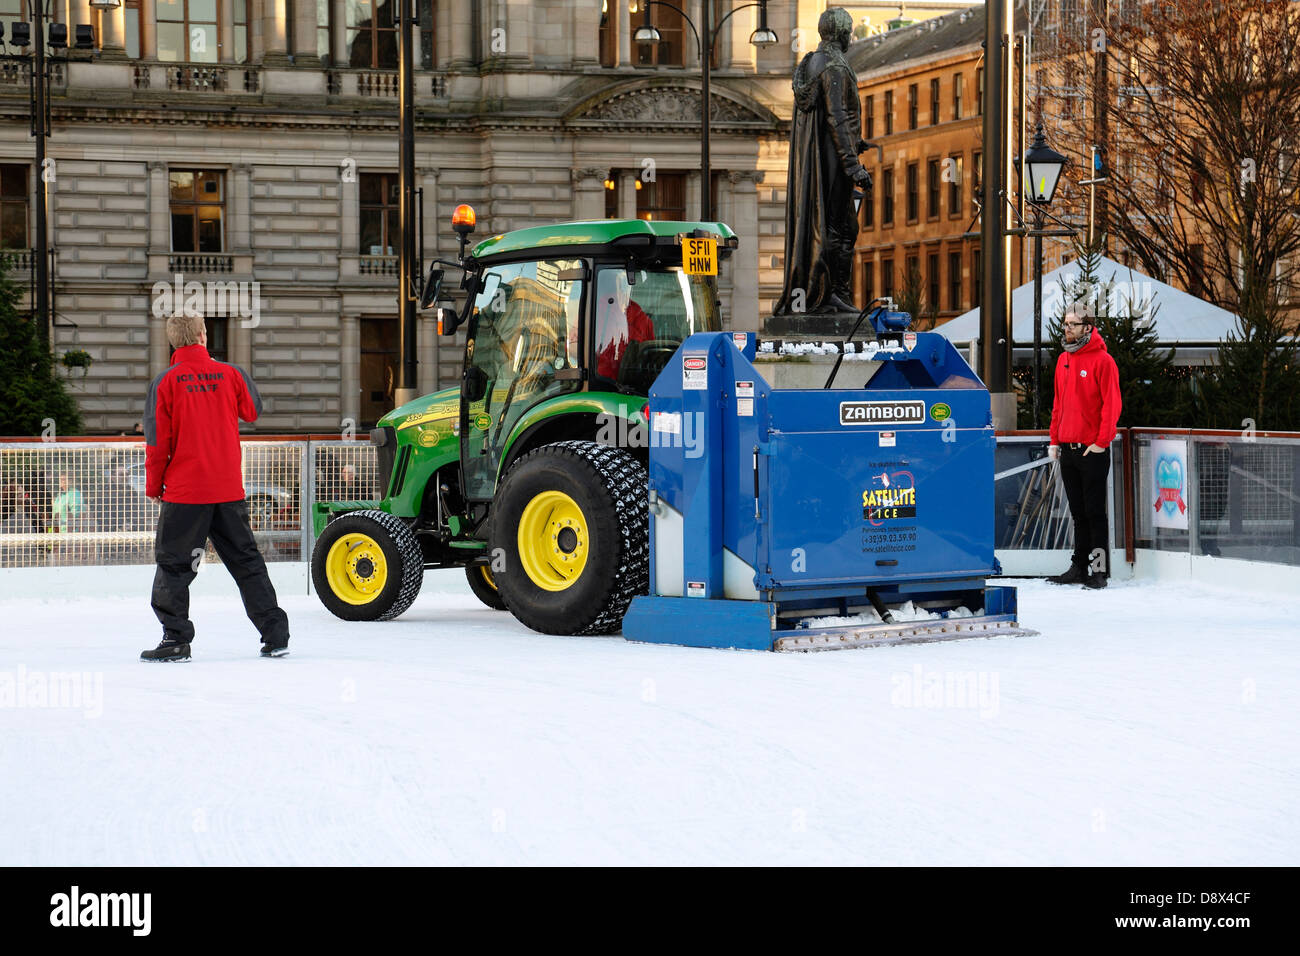 Ein Zamboni-Eis-Resurfacer wird verwendet, um eine Freiluftlaufbahn, George Square, Glasgow City Centre, Schottland, Großbritannien zu pflegen Stockfoto